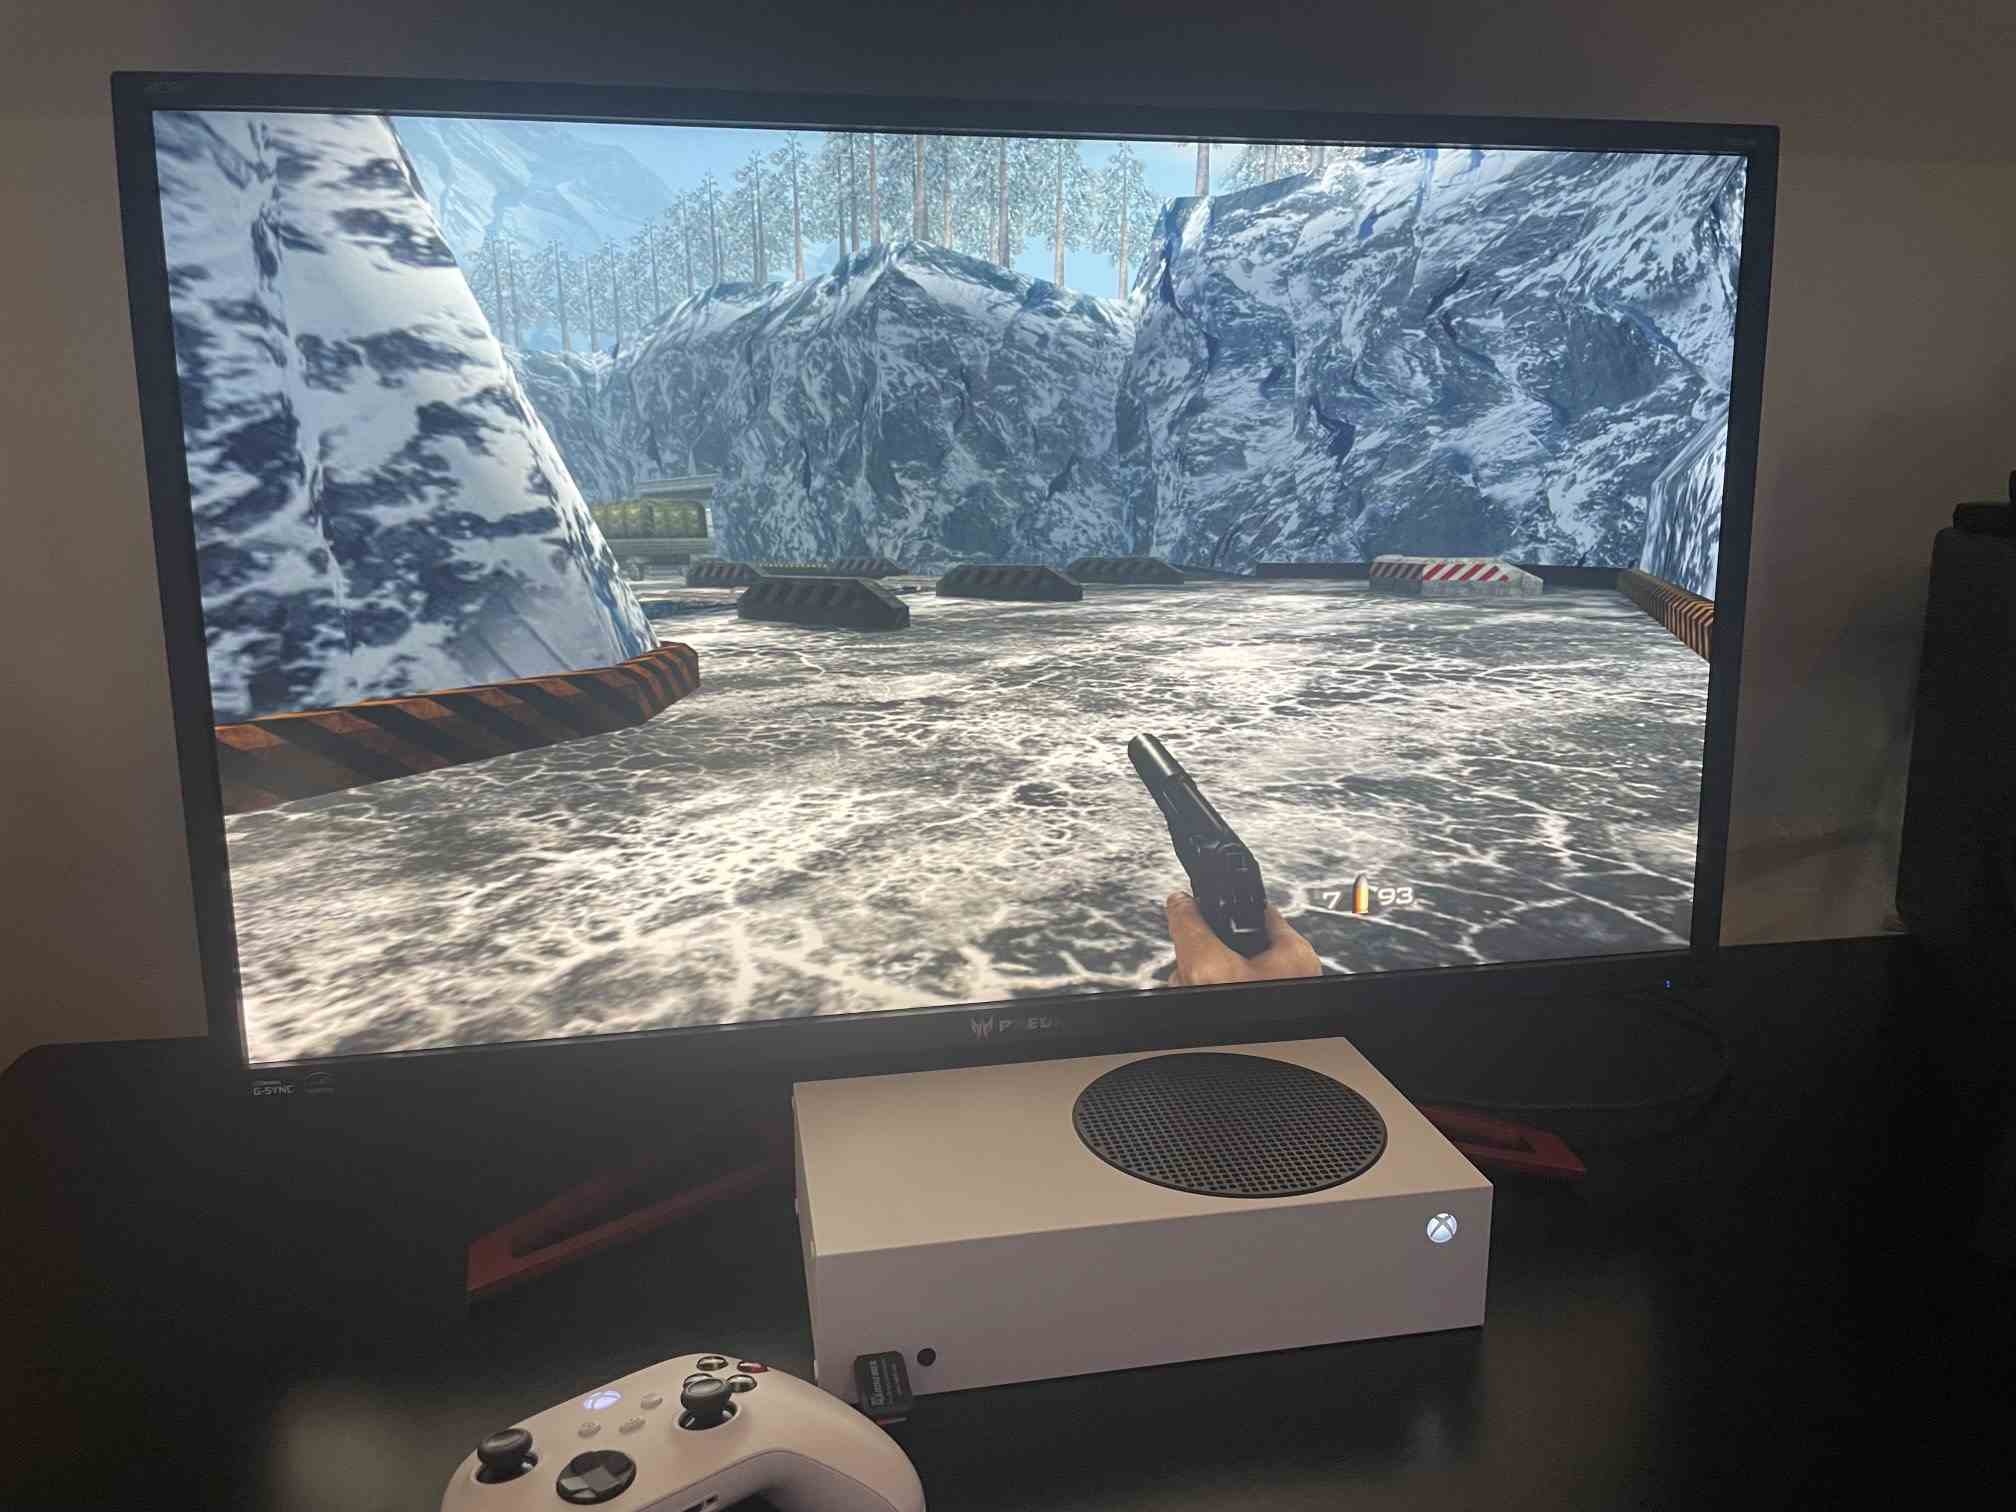 Goldeneye 007 fonctionnant sur Xbox Series X avec l'émulateur Xenia Xbox 360